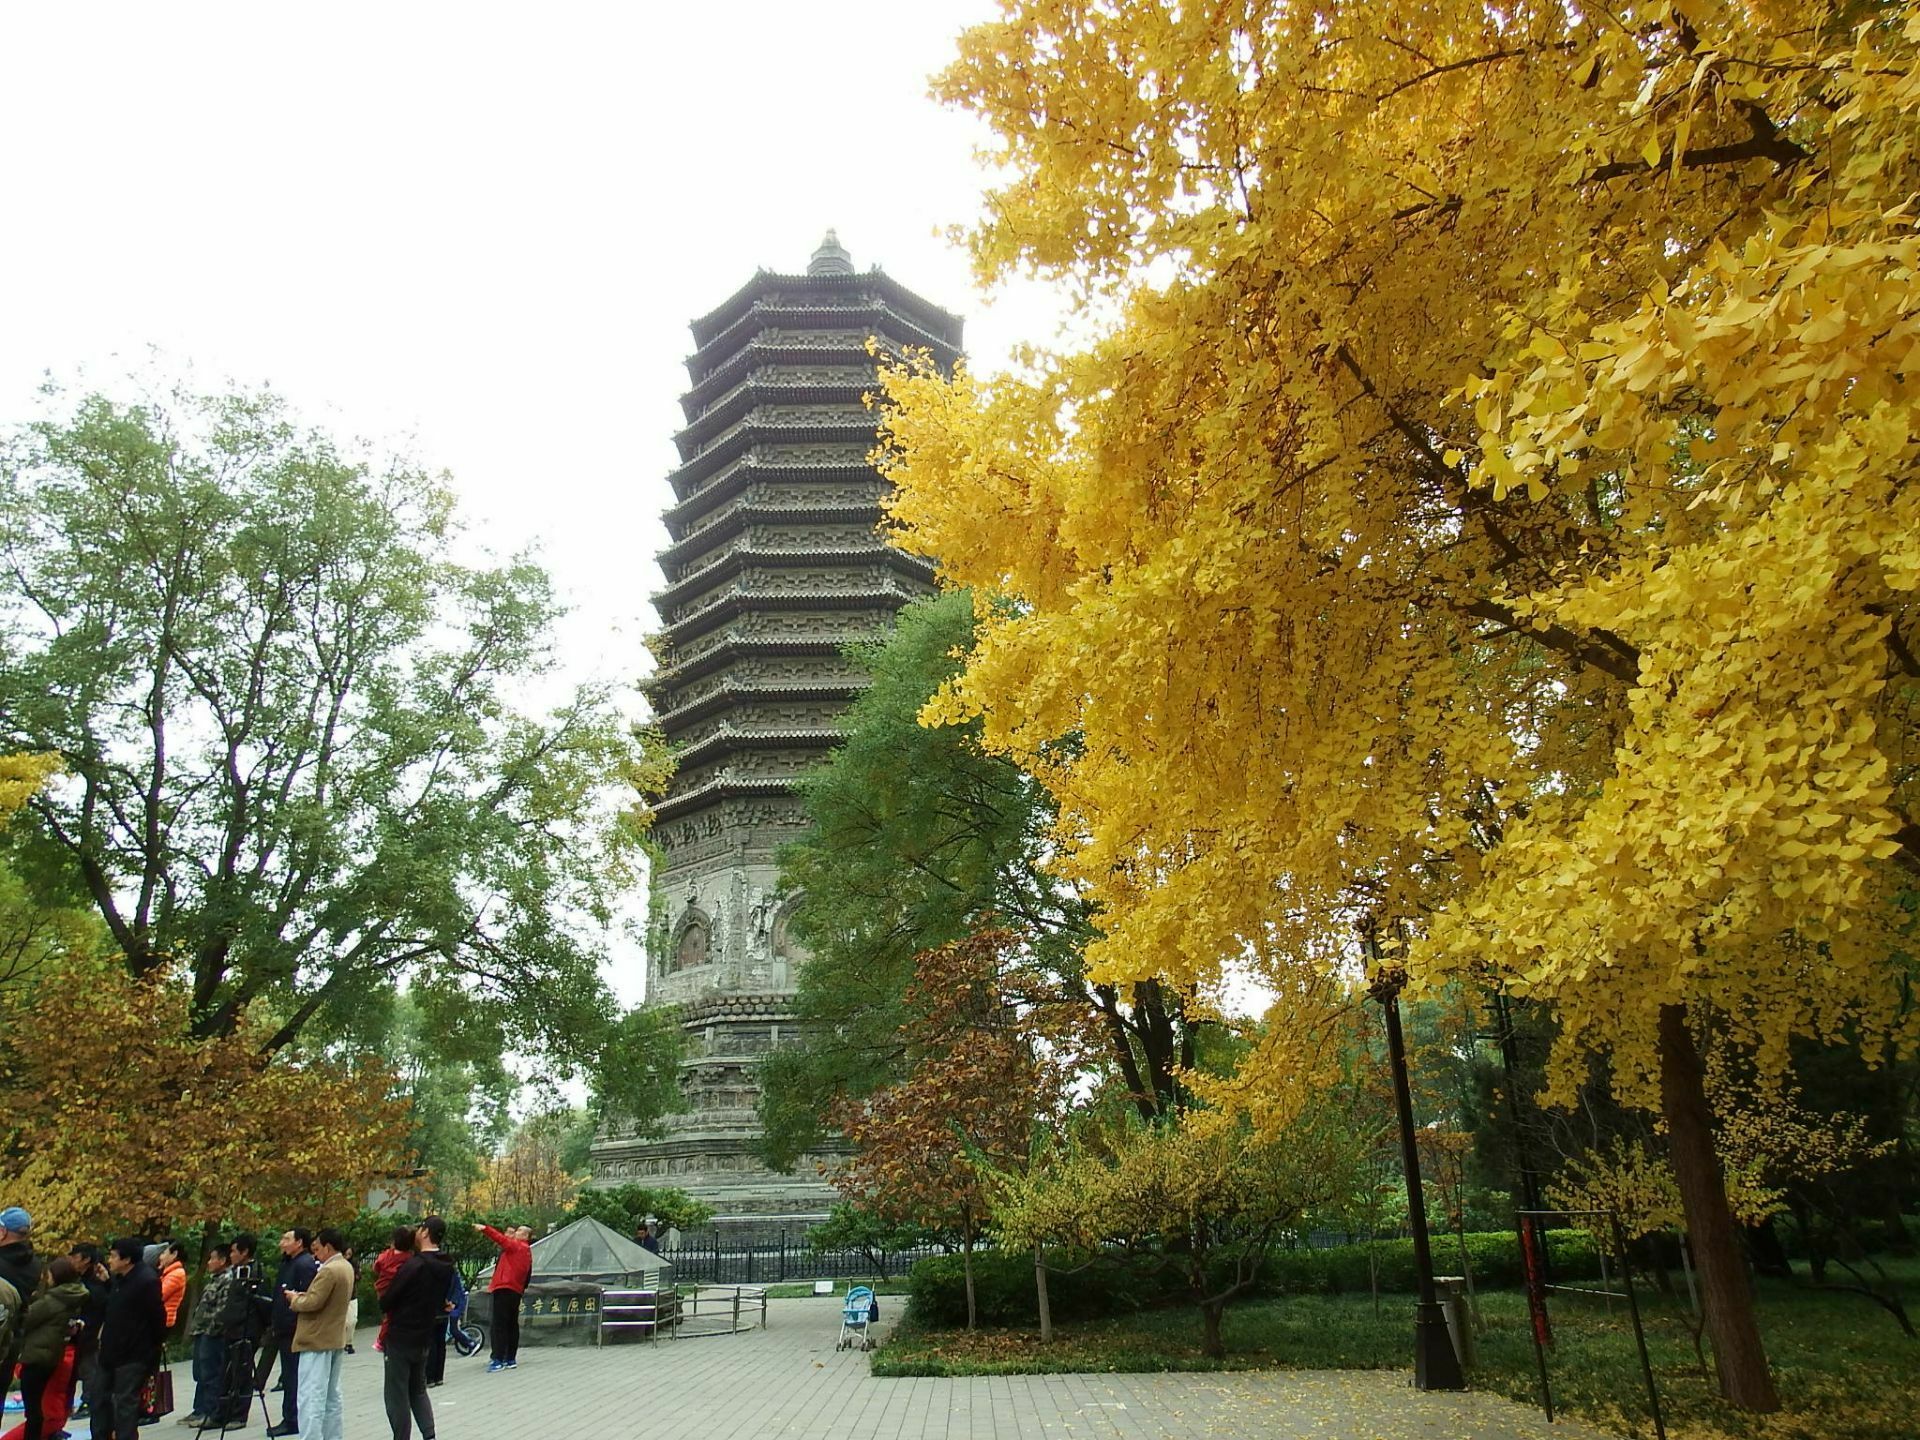 【携程攻略】北京玲珑塔(八里庄塔)景点,玲珑塔在玲珑公园内南门附近